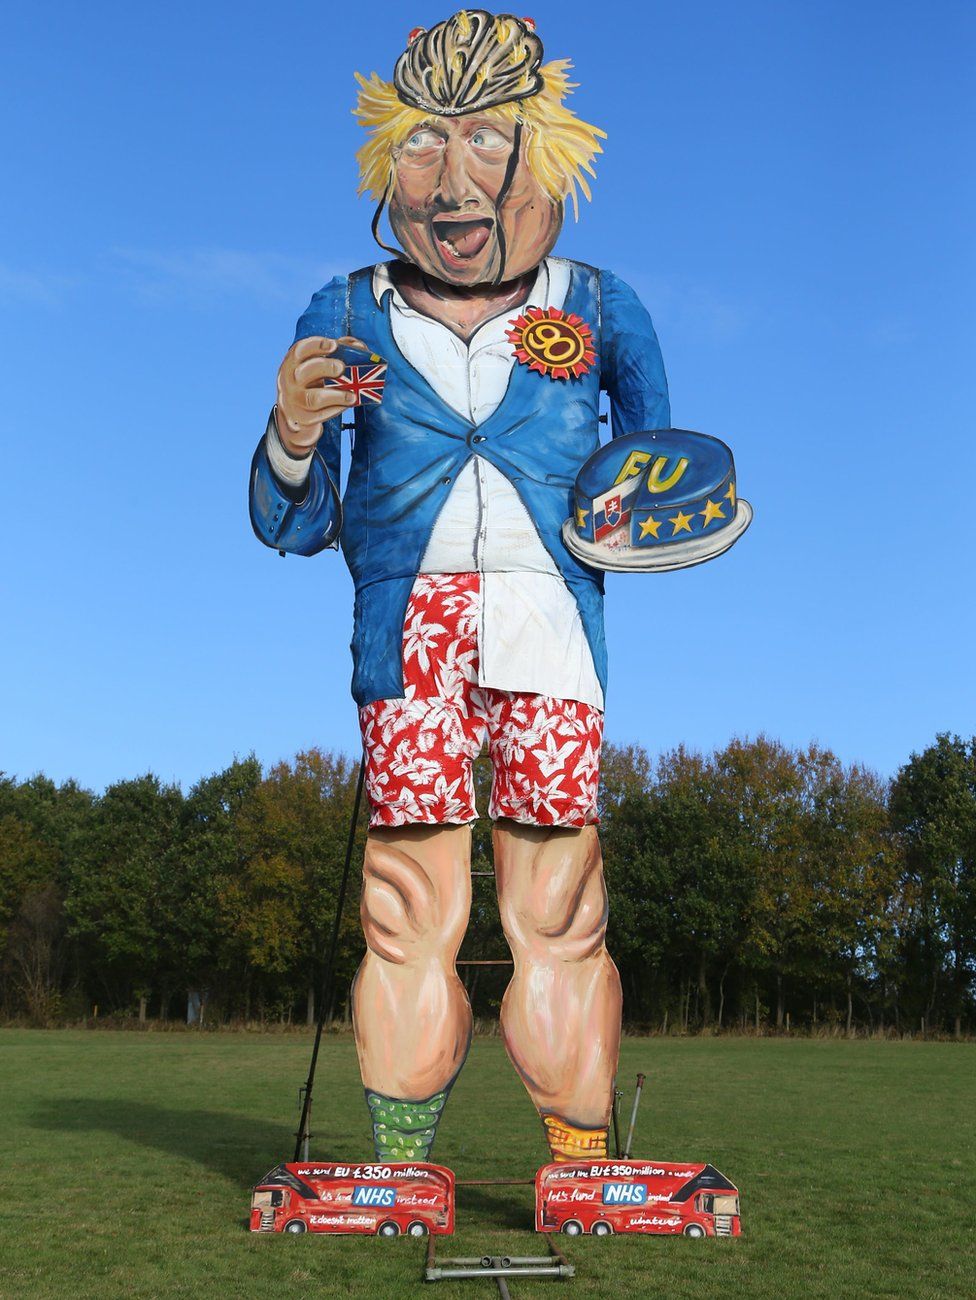 Boris Johnson effigy